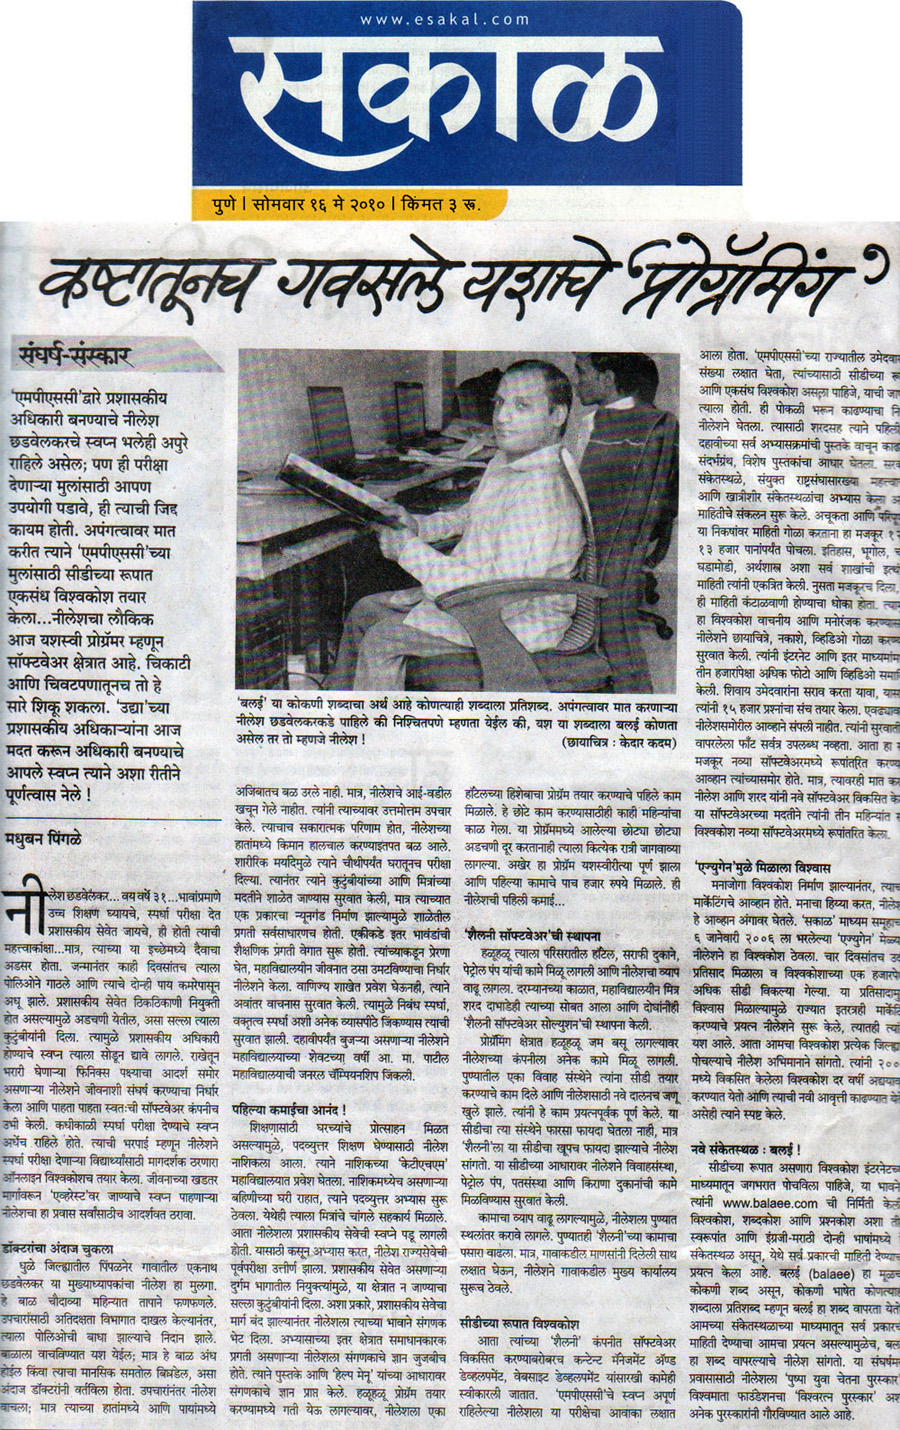 News article in Sakal